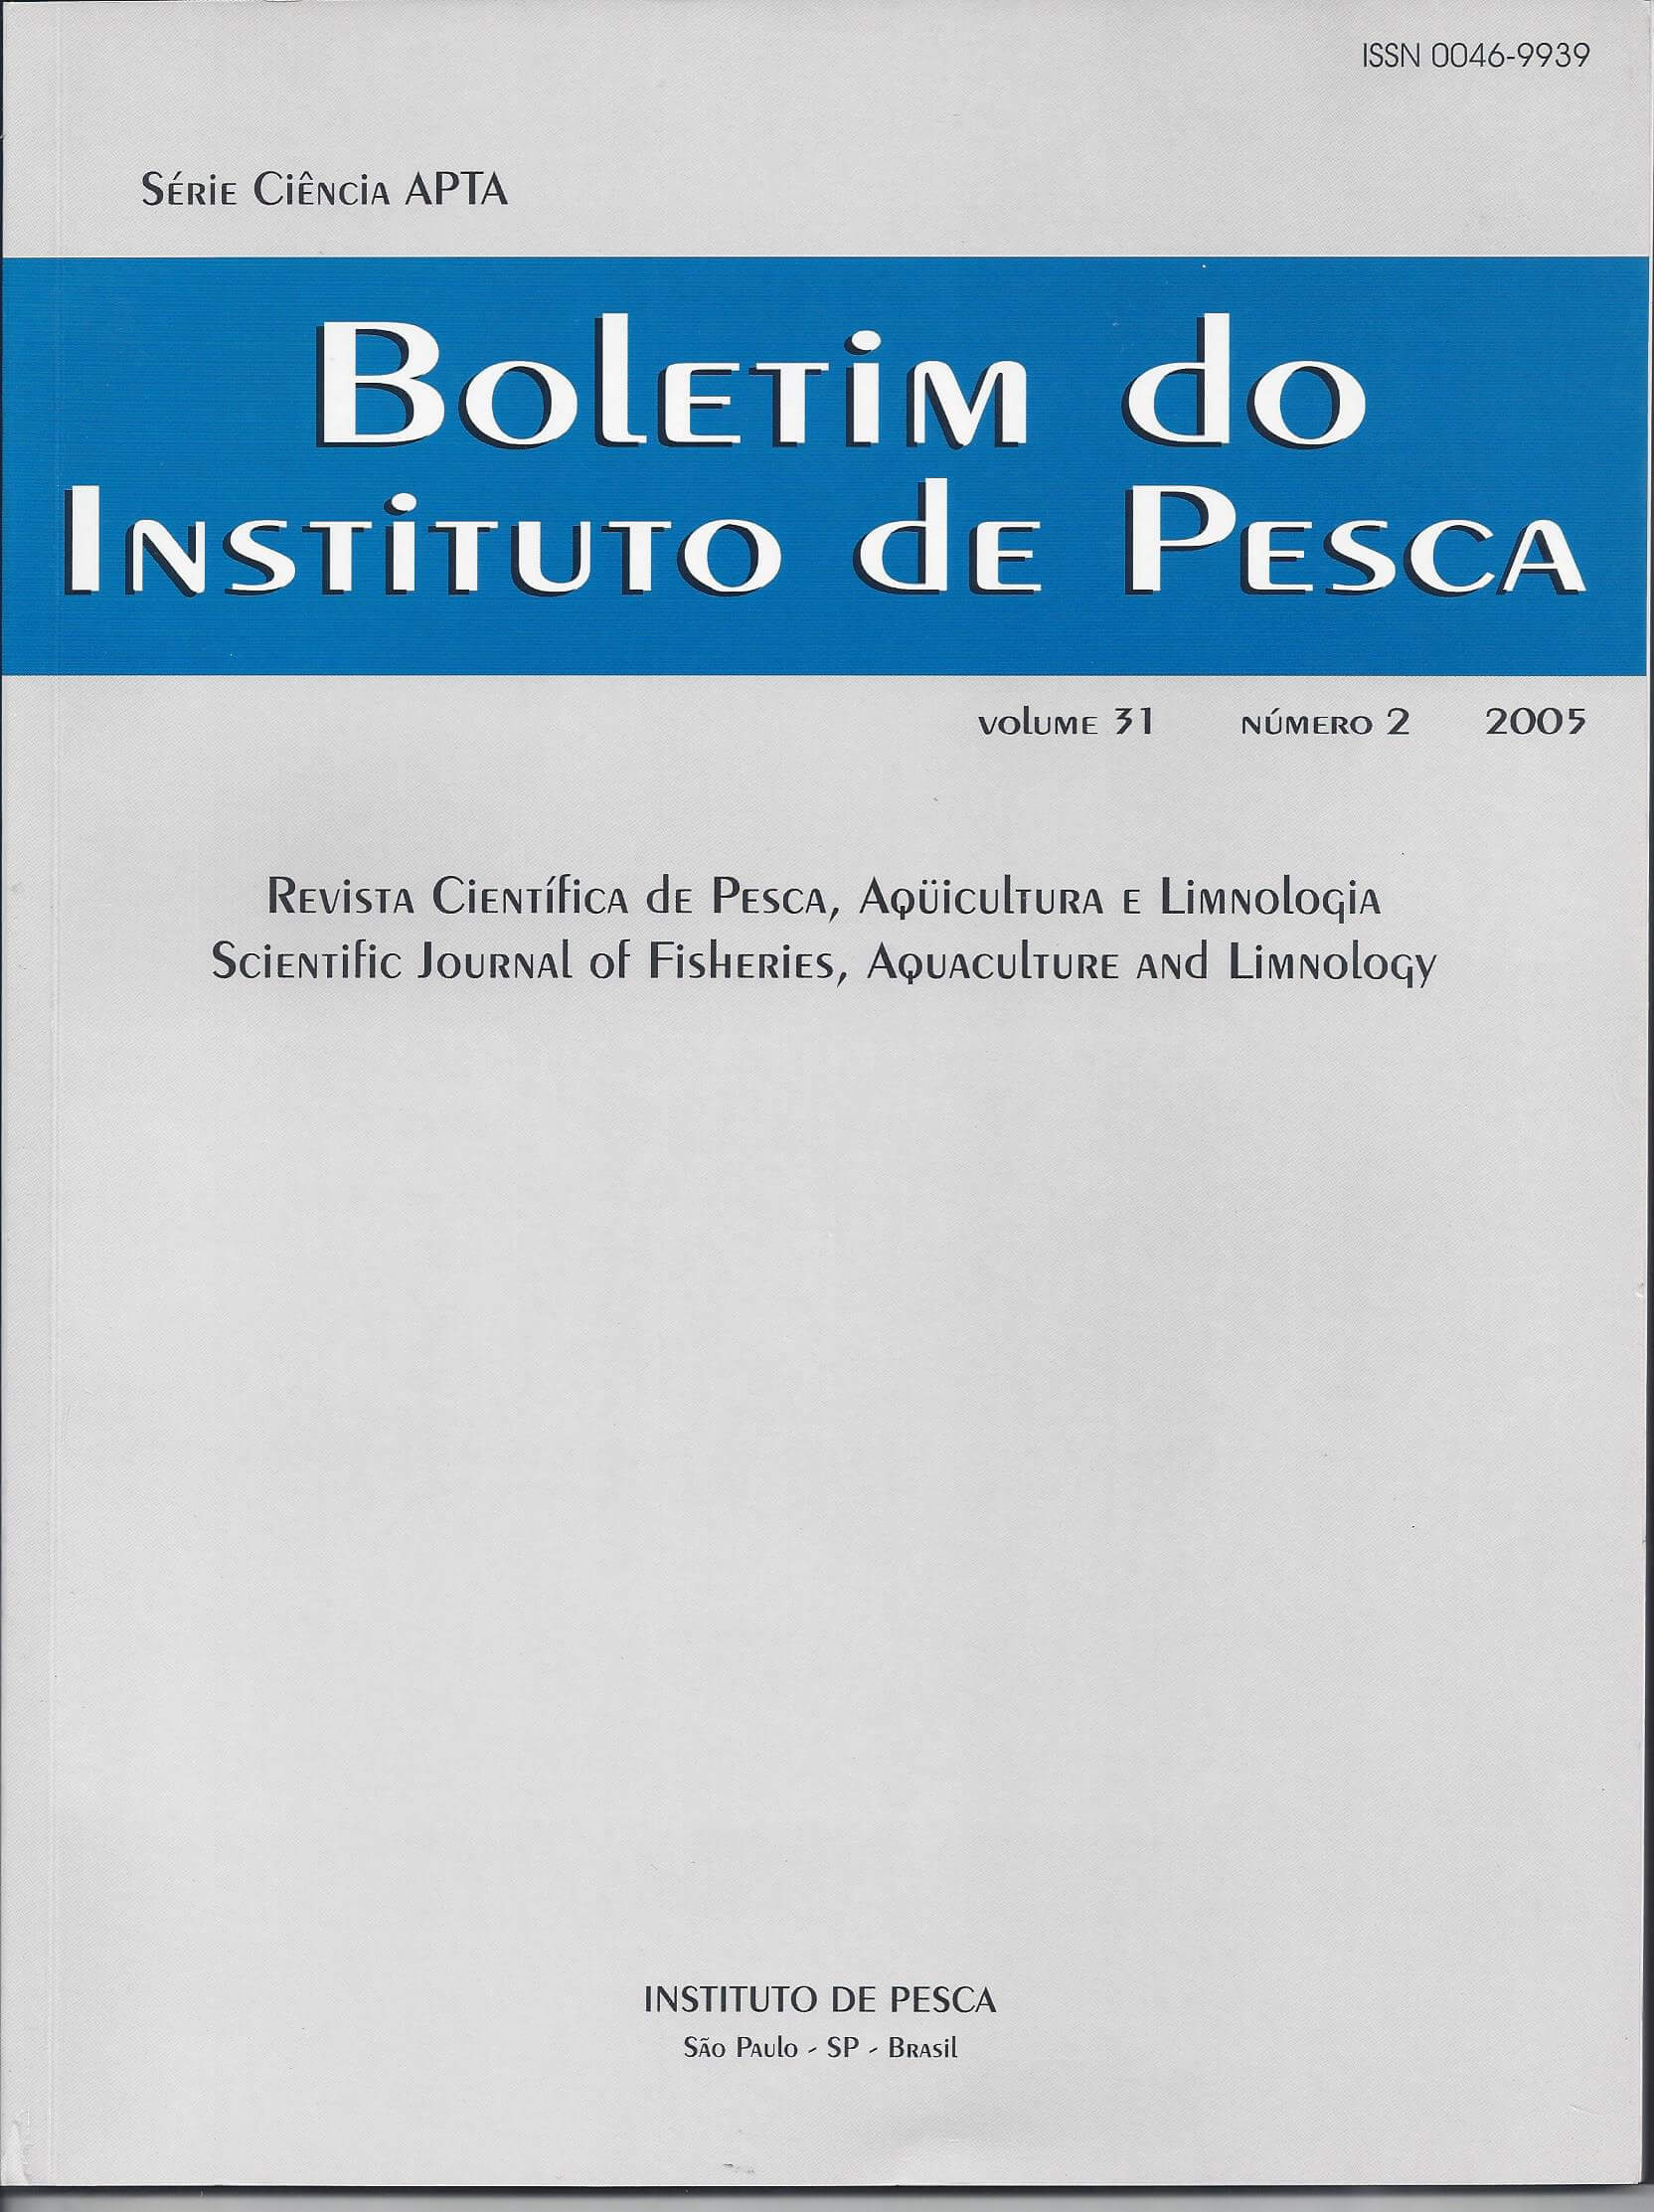 					Visualizar v. 31 n. 2 (2005): BOLETIM DO INSTITUTO DE PESCA
				